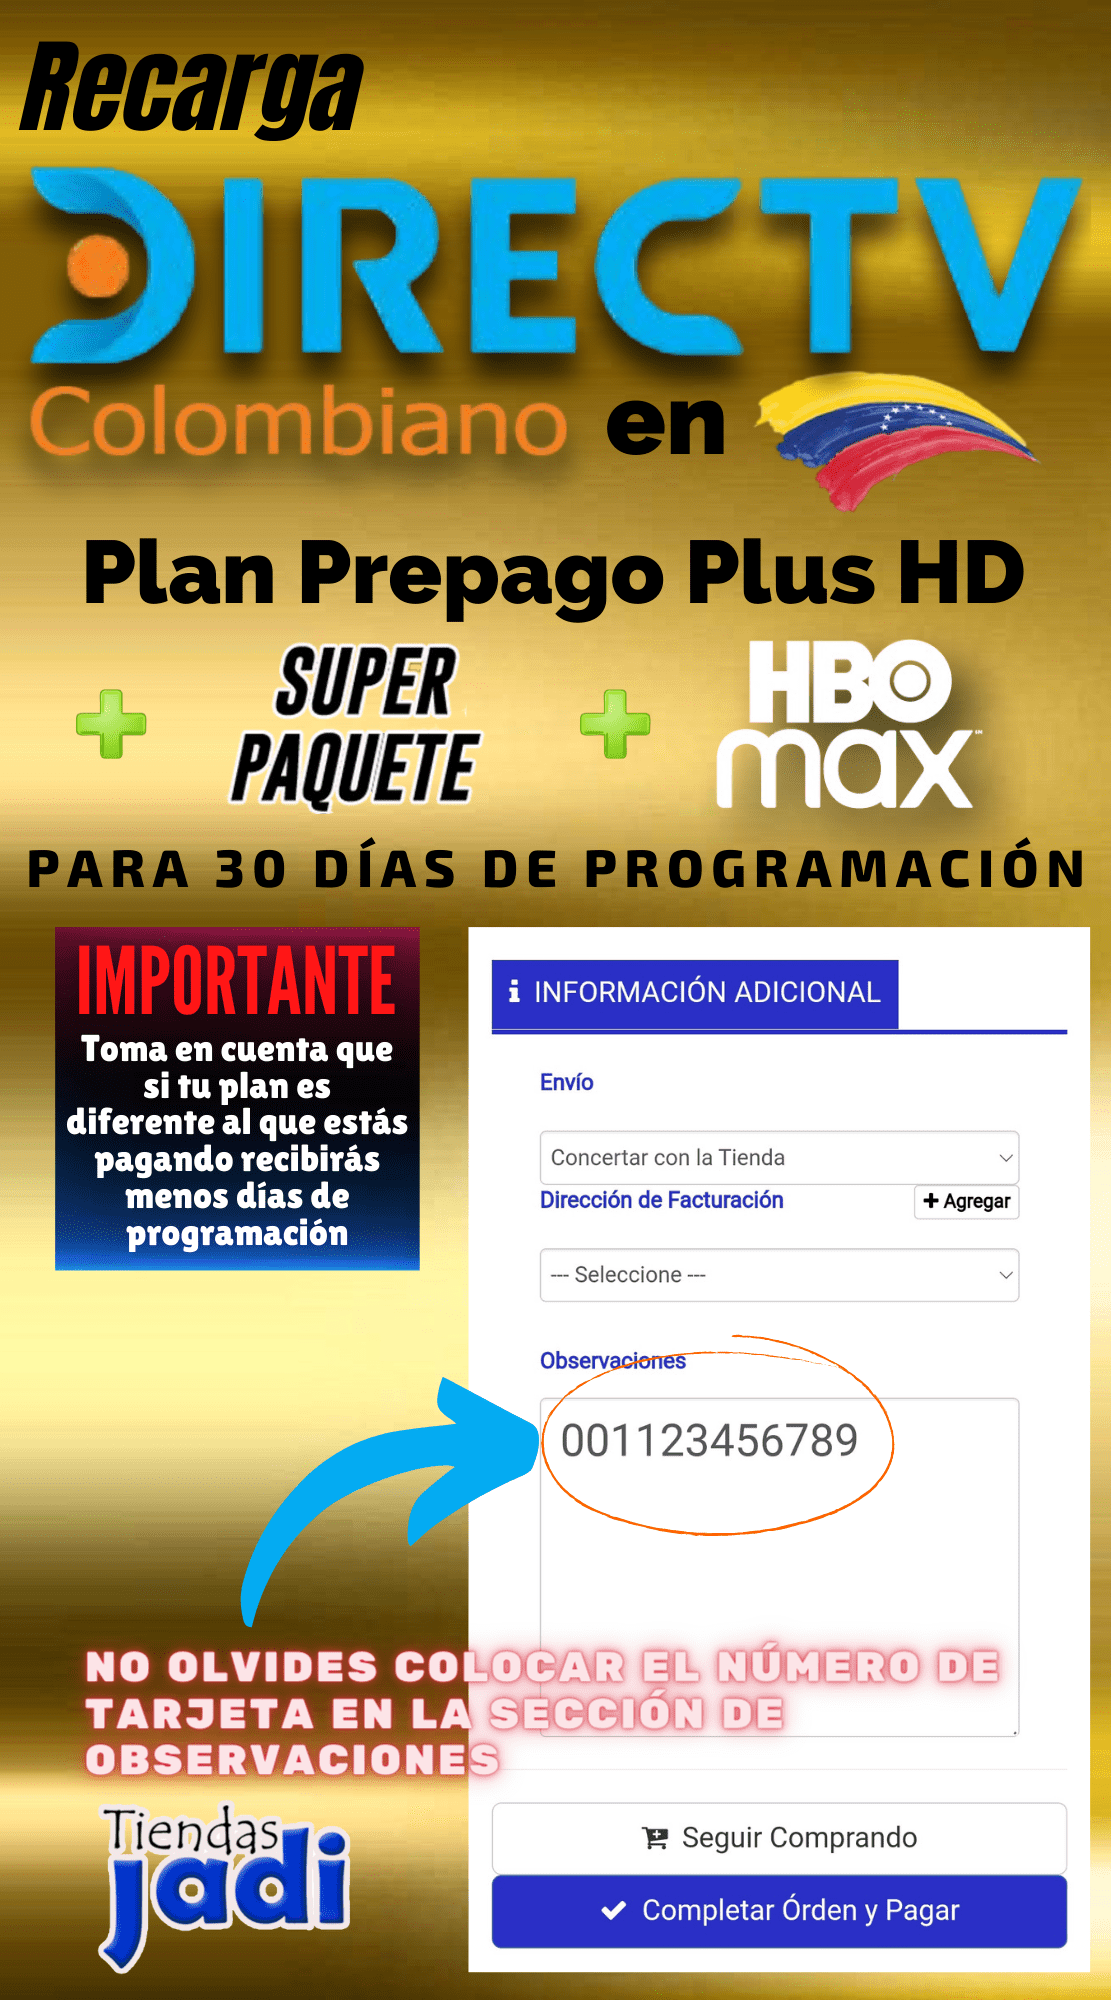 Recargar Directv Colombiano en Venezuela Plan Basico + Super Paquete + HBO 30 Dias de Programacion